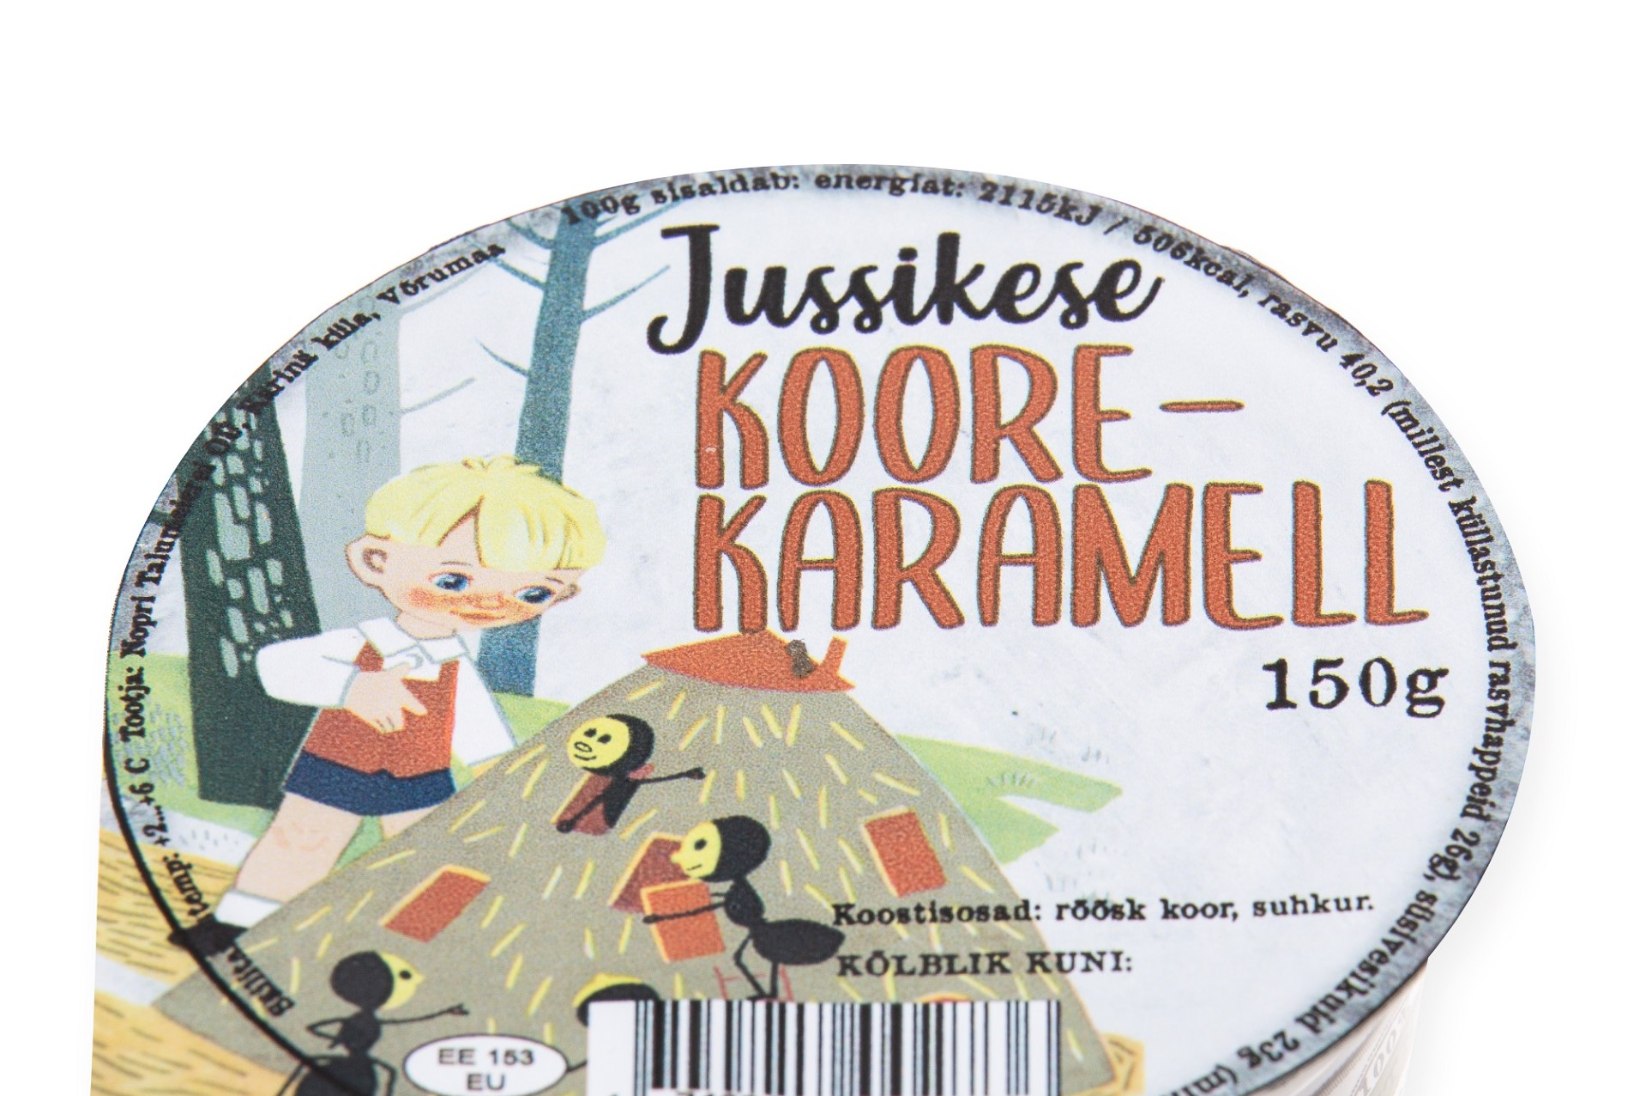 Nopri Talumeierei toob välja Jussikese sarja: uus piimatoode igaks nädalapäevaks